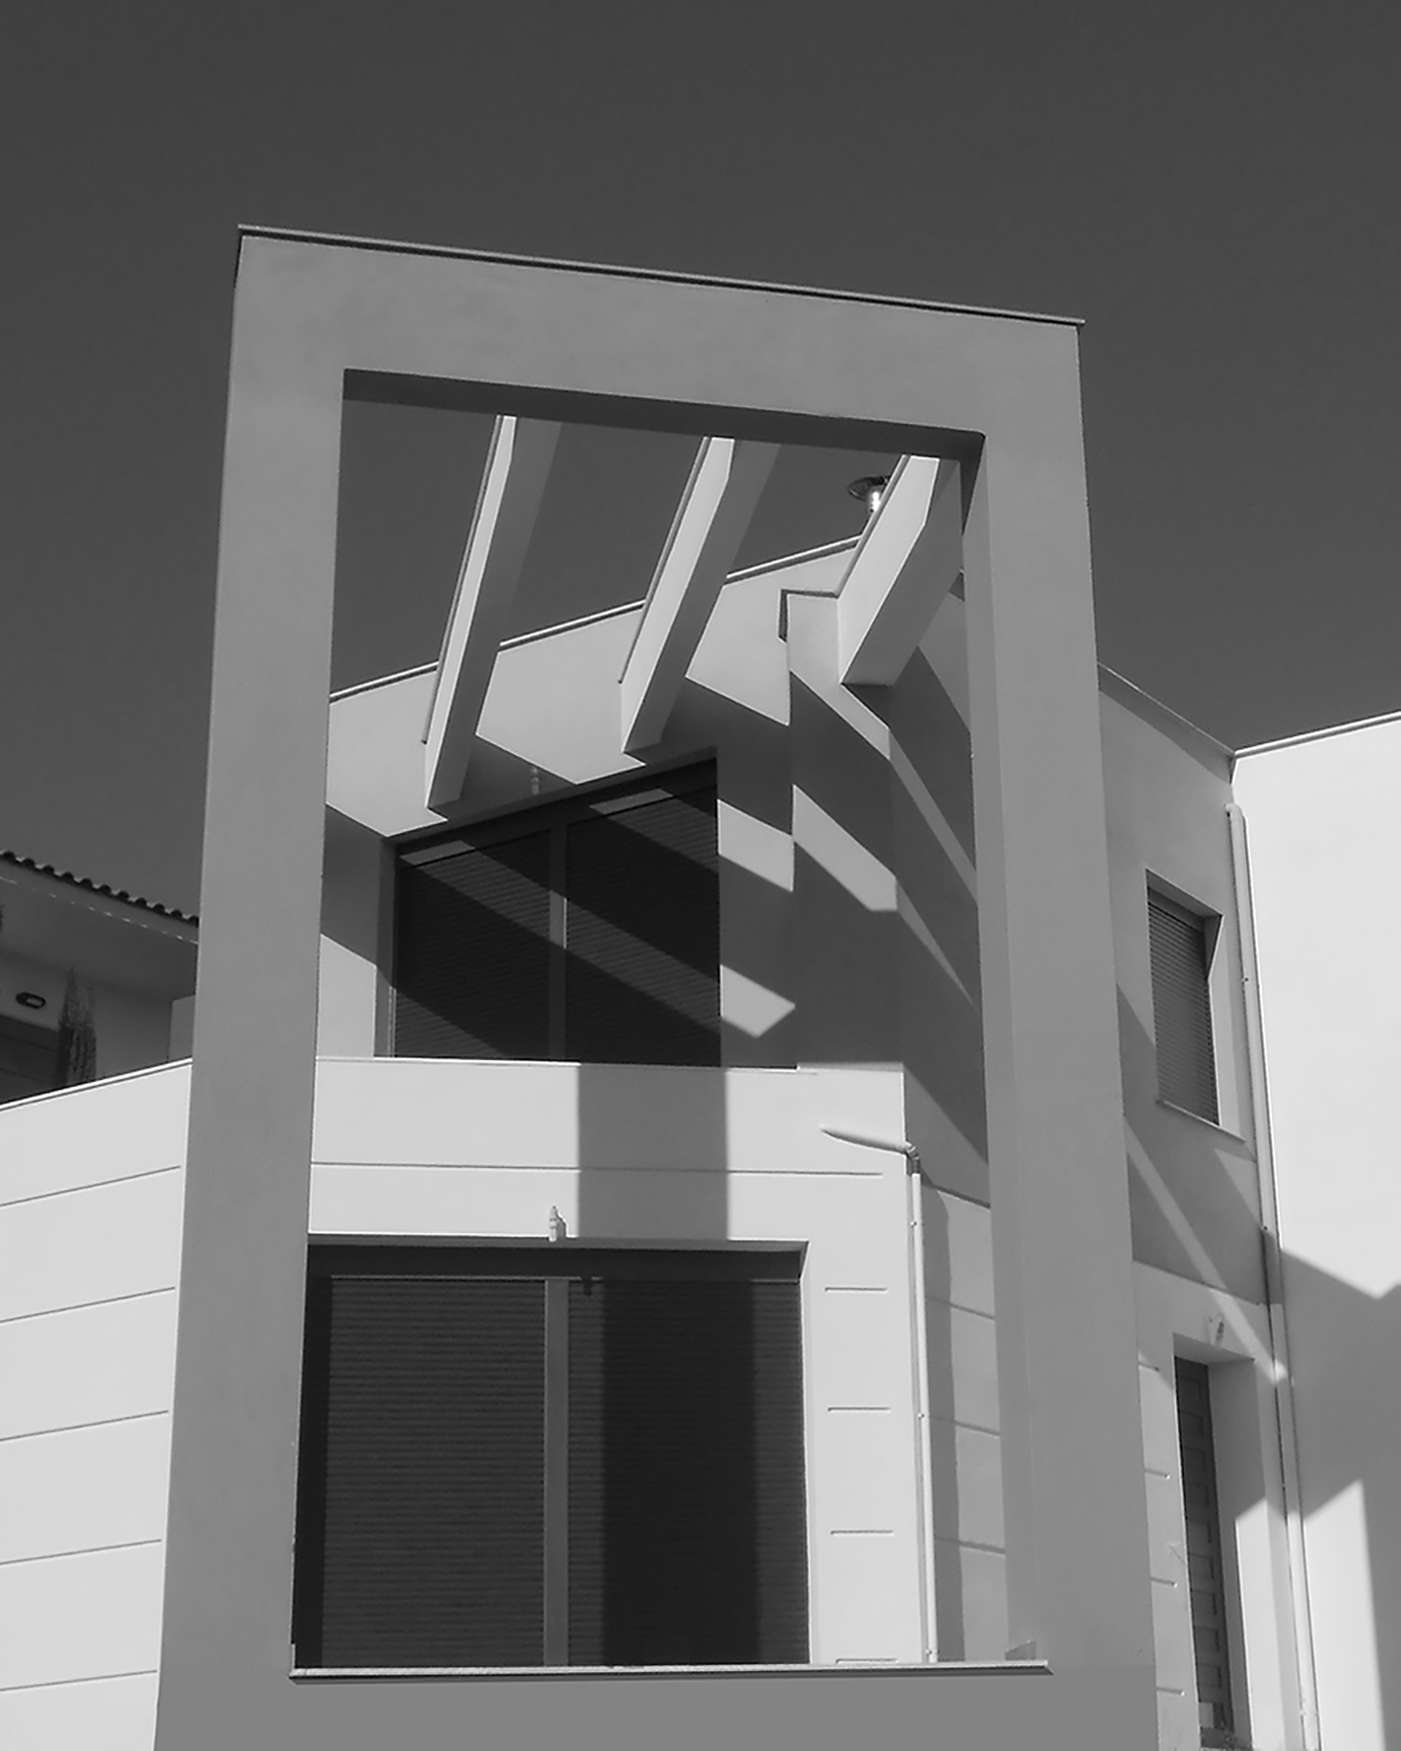 Μονοκατοικία στην Μεταμόρφωση Χαλκιδικής (2011)<br>(επίβλεψη – κατασκευή Αμβροσιάδης Κων/νος)